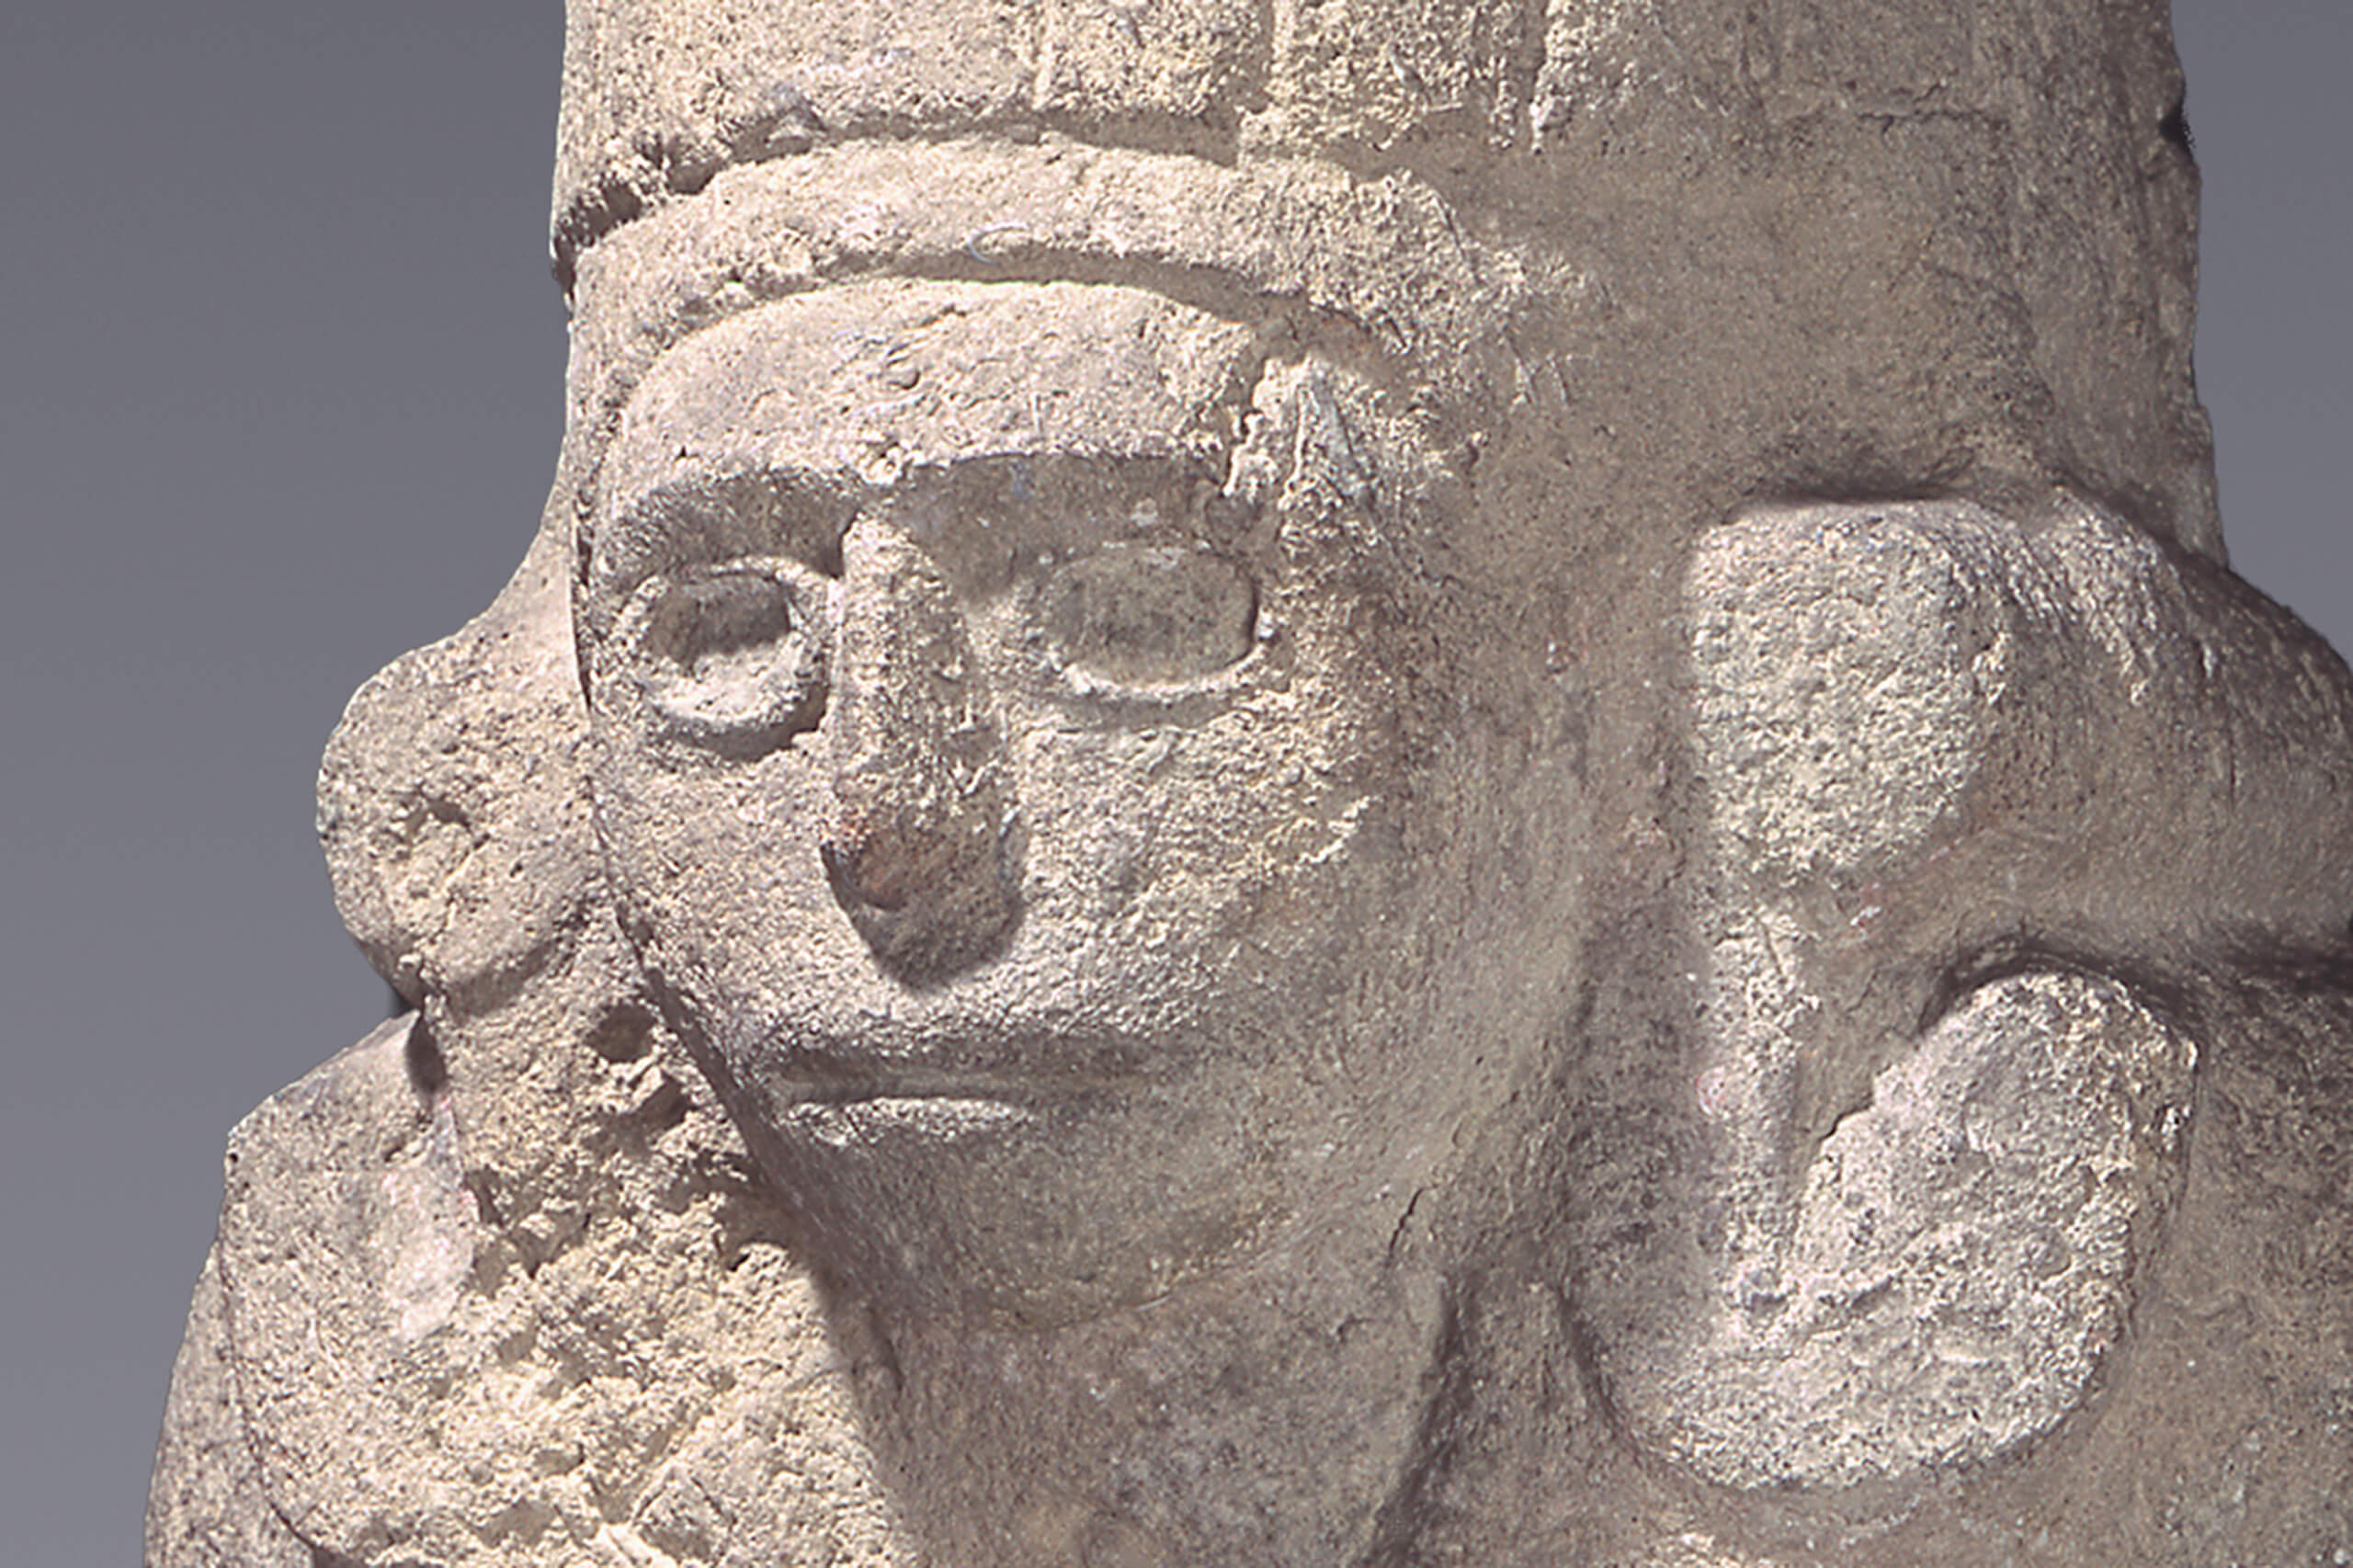 Sacerdote huasteco del dios del viento | El México antiguo. Salas de Arte Prehispánico | Museo Amparo, Puebla